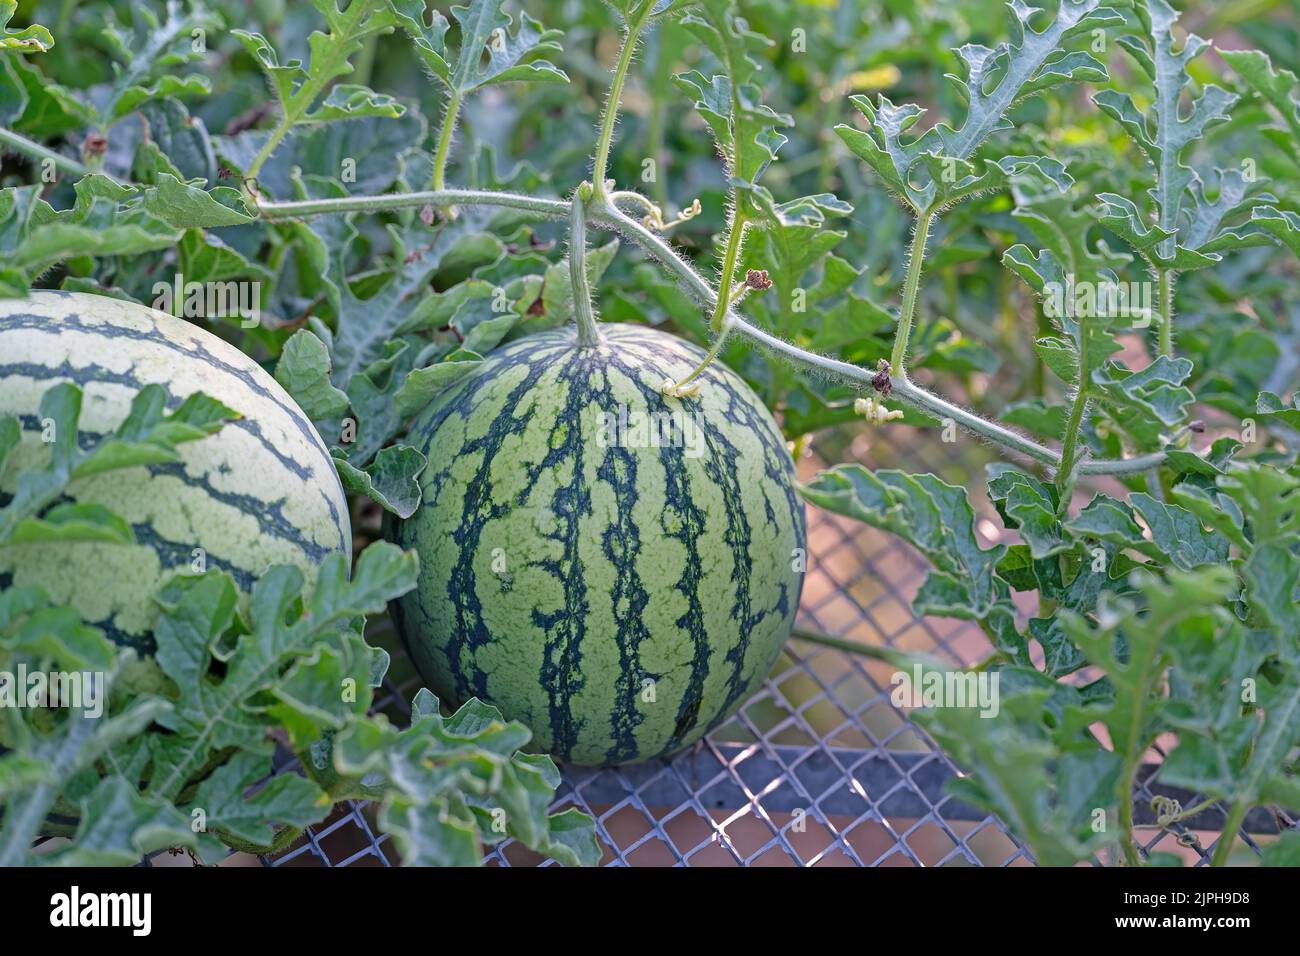 Watermelon, Citrullus lanatus, on a trellis in a garden Stock Photo